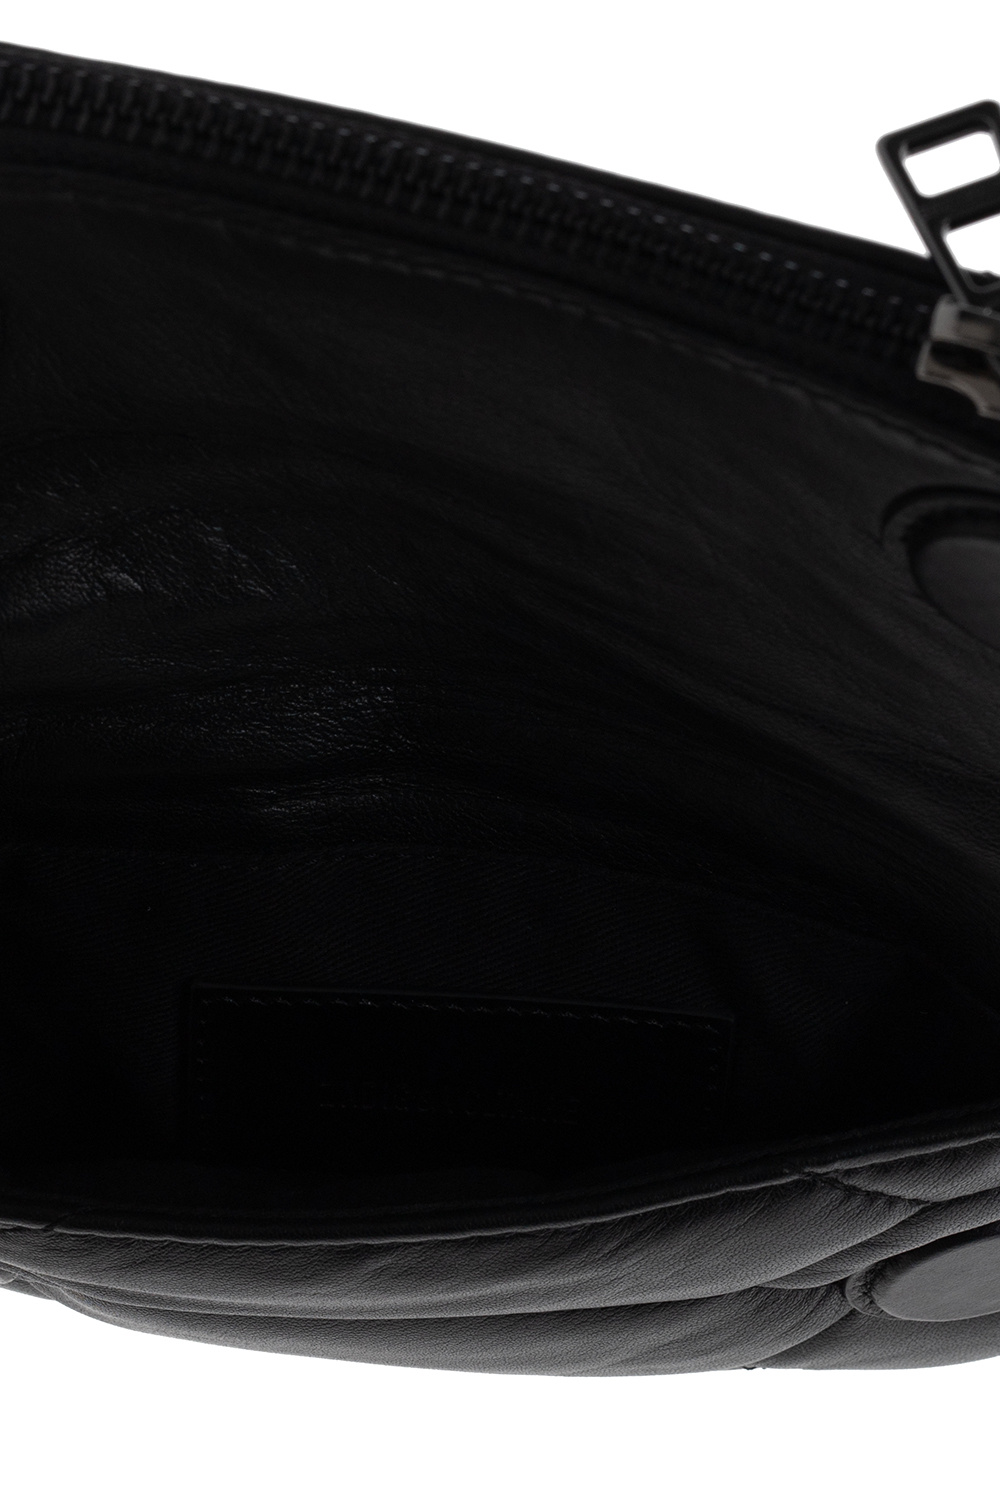 IetpShops, Zadig & Voltaire 'Rock Nano' shoulder bag